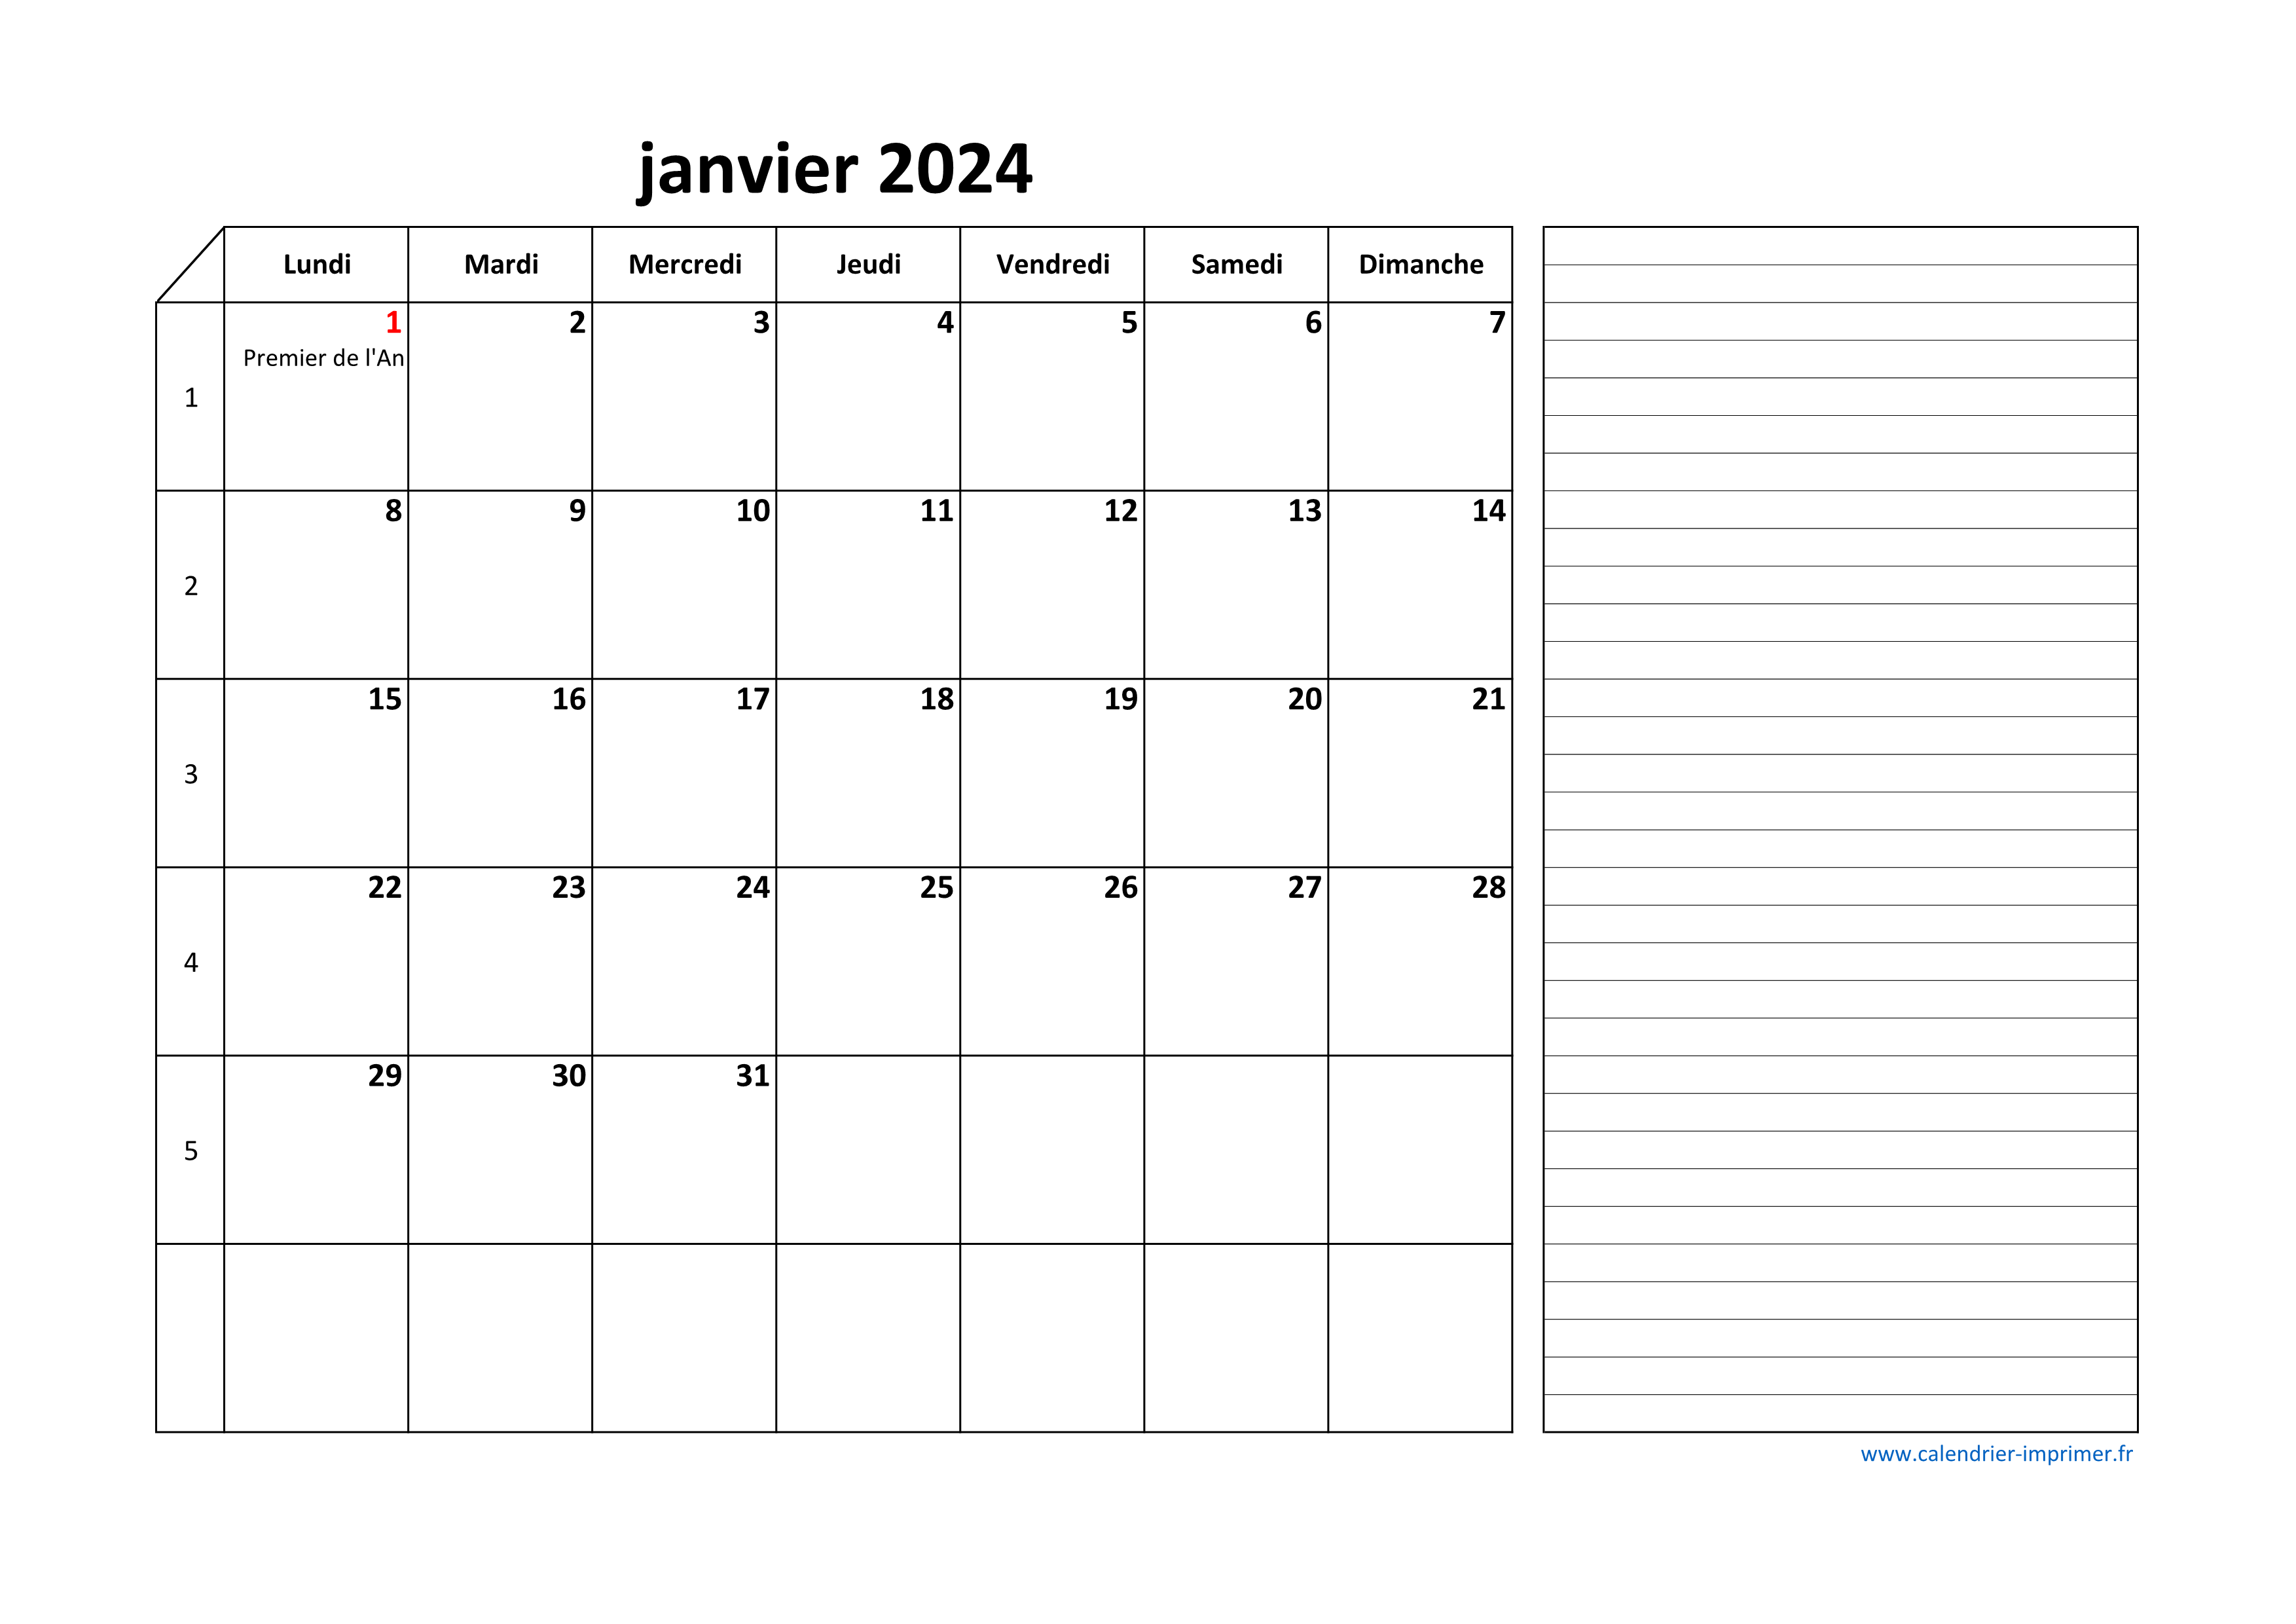 Calendrier Janvier 2024 à consulter ou imprimer 